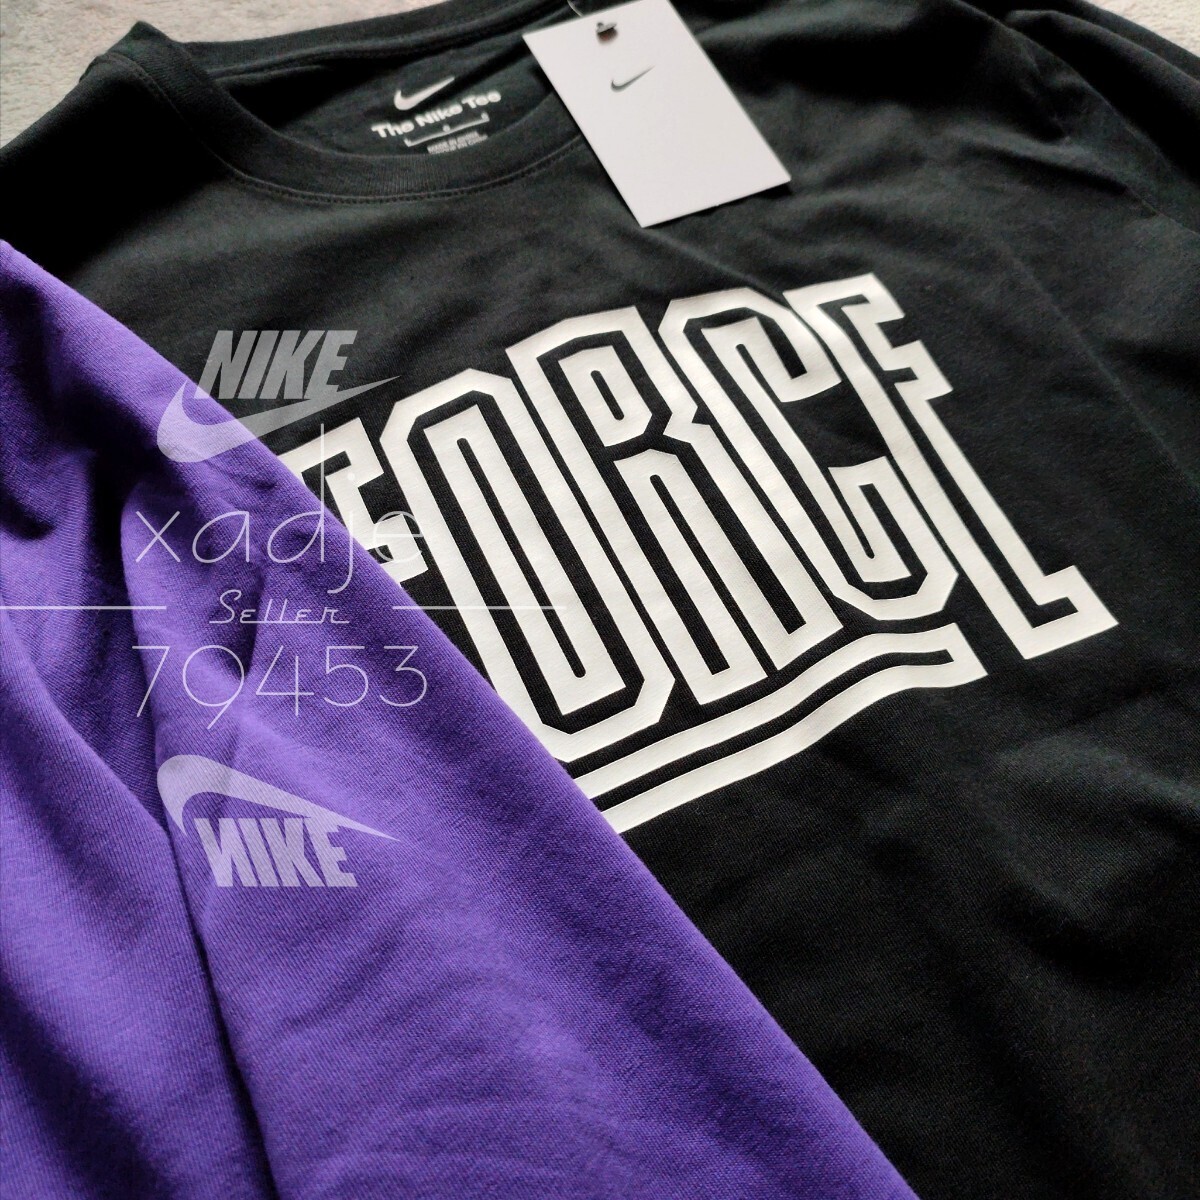  новый товар стандартный товар NIKE Nike NSW FORCE four Sprint длинный рукав long T 2 шт. комплект чёрный черный фиолетовый лиловый белый XL